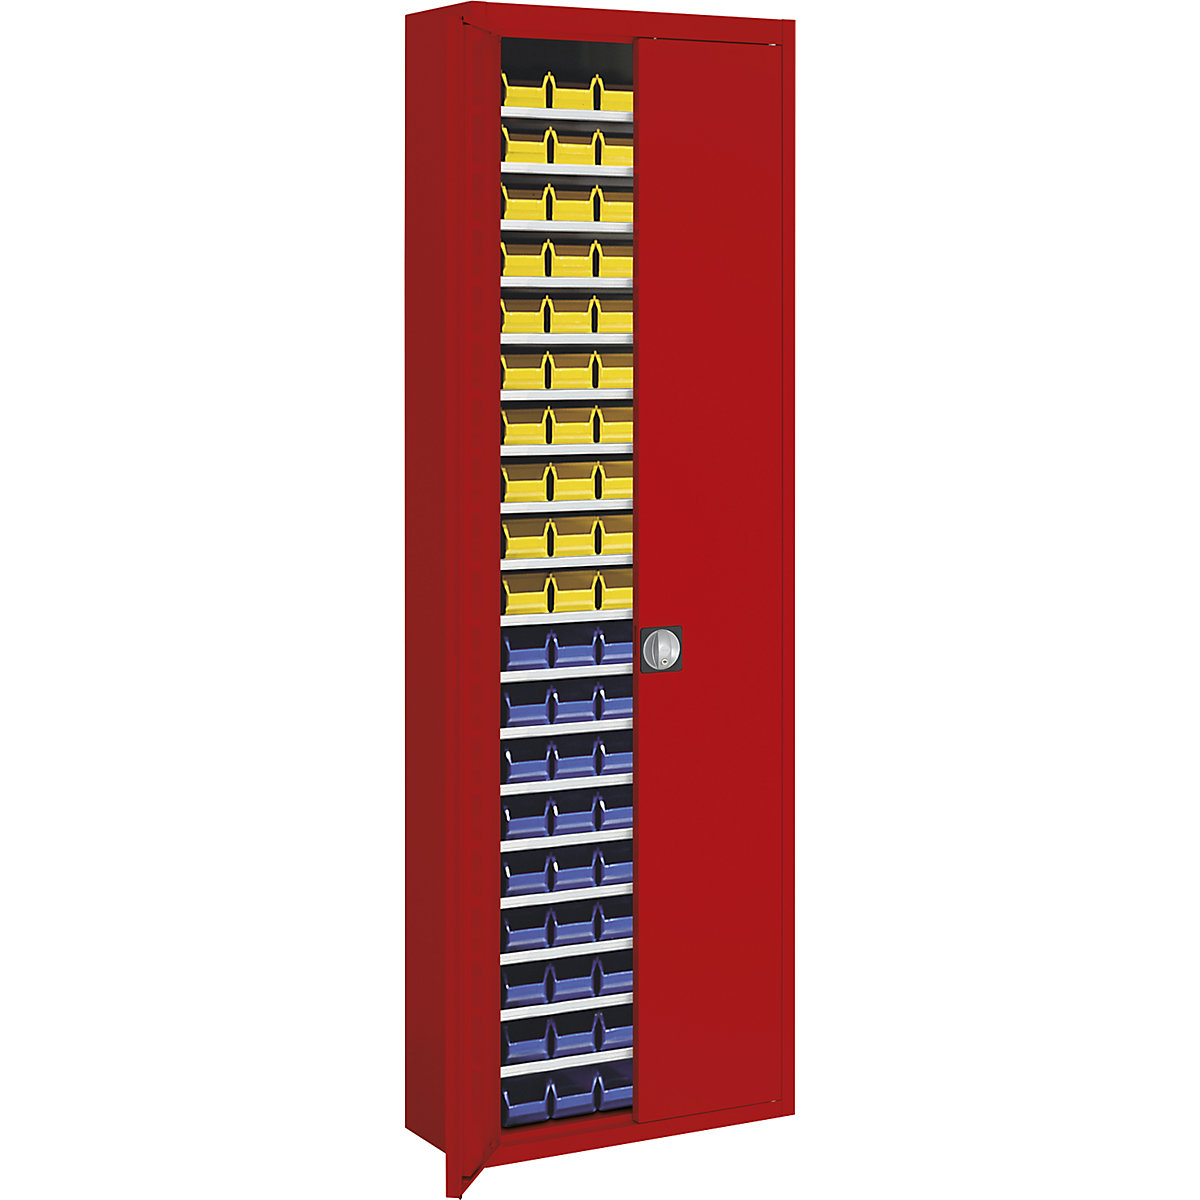 Magazijnkast met magazijnbakken – mauser, h x b x d = 2150 x 680 x 280 mm, eenkleurig, rood, 114 bakken-6